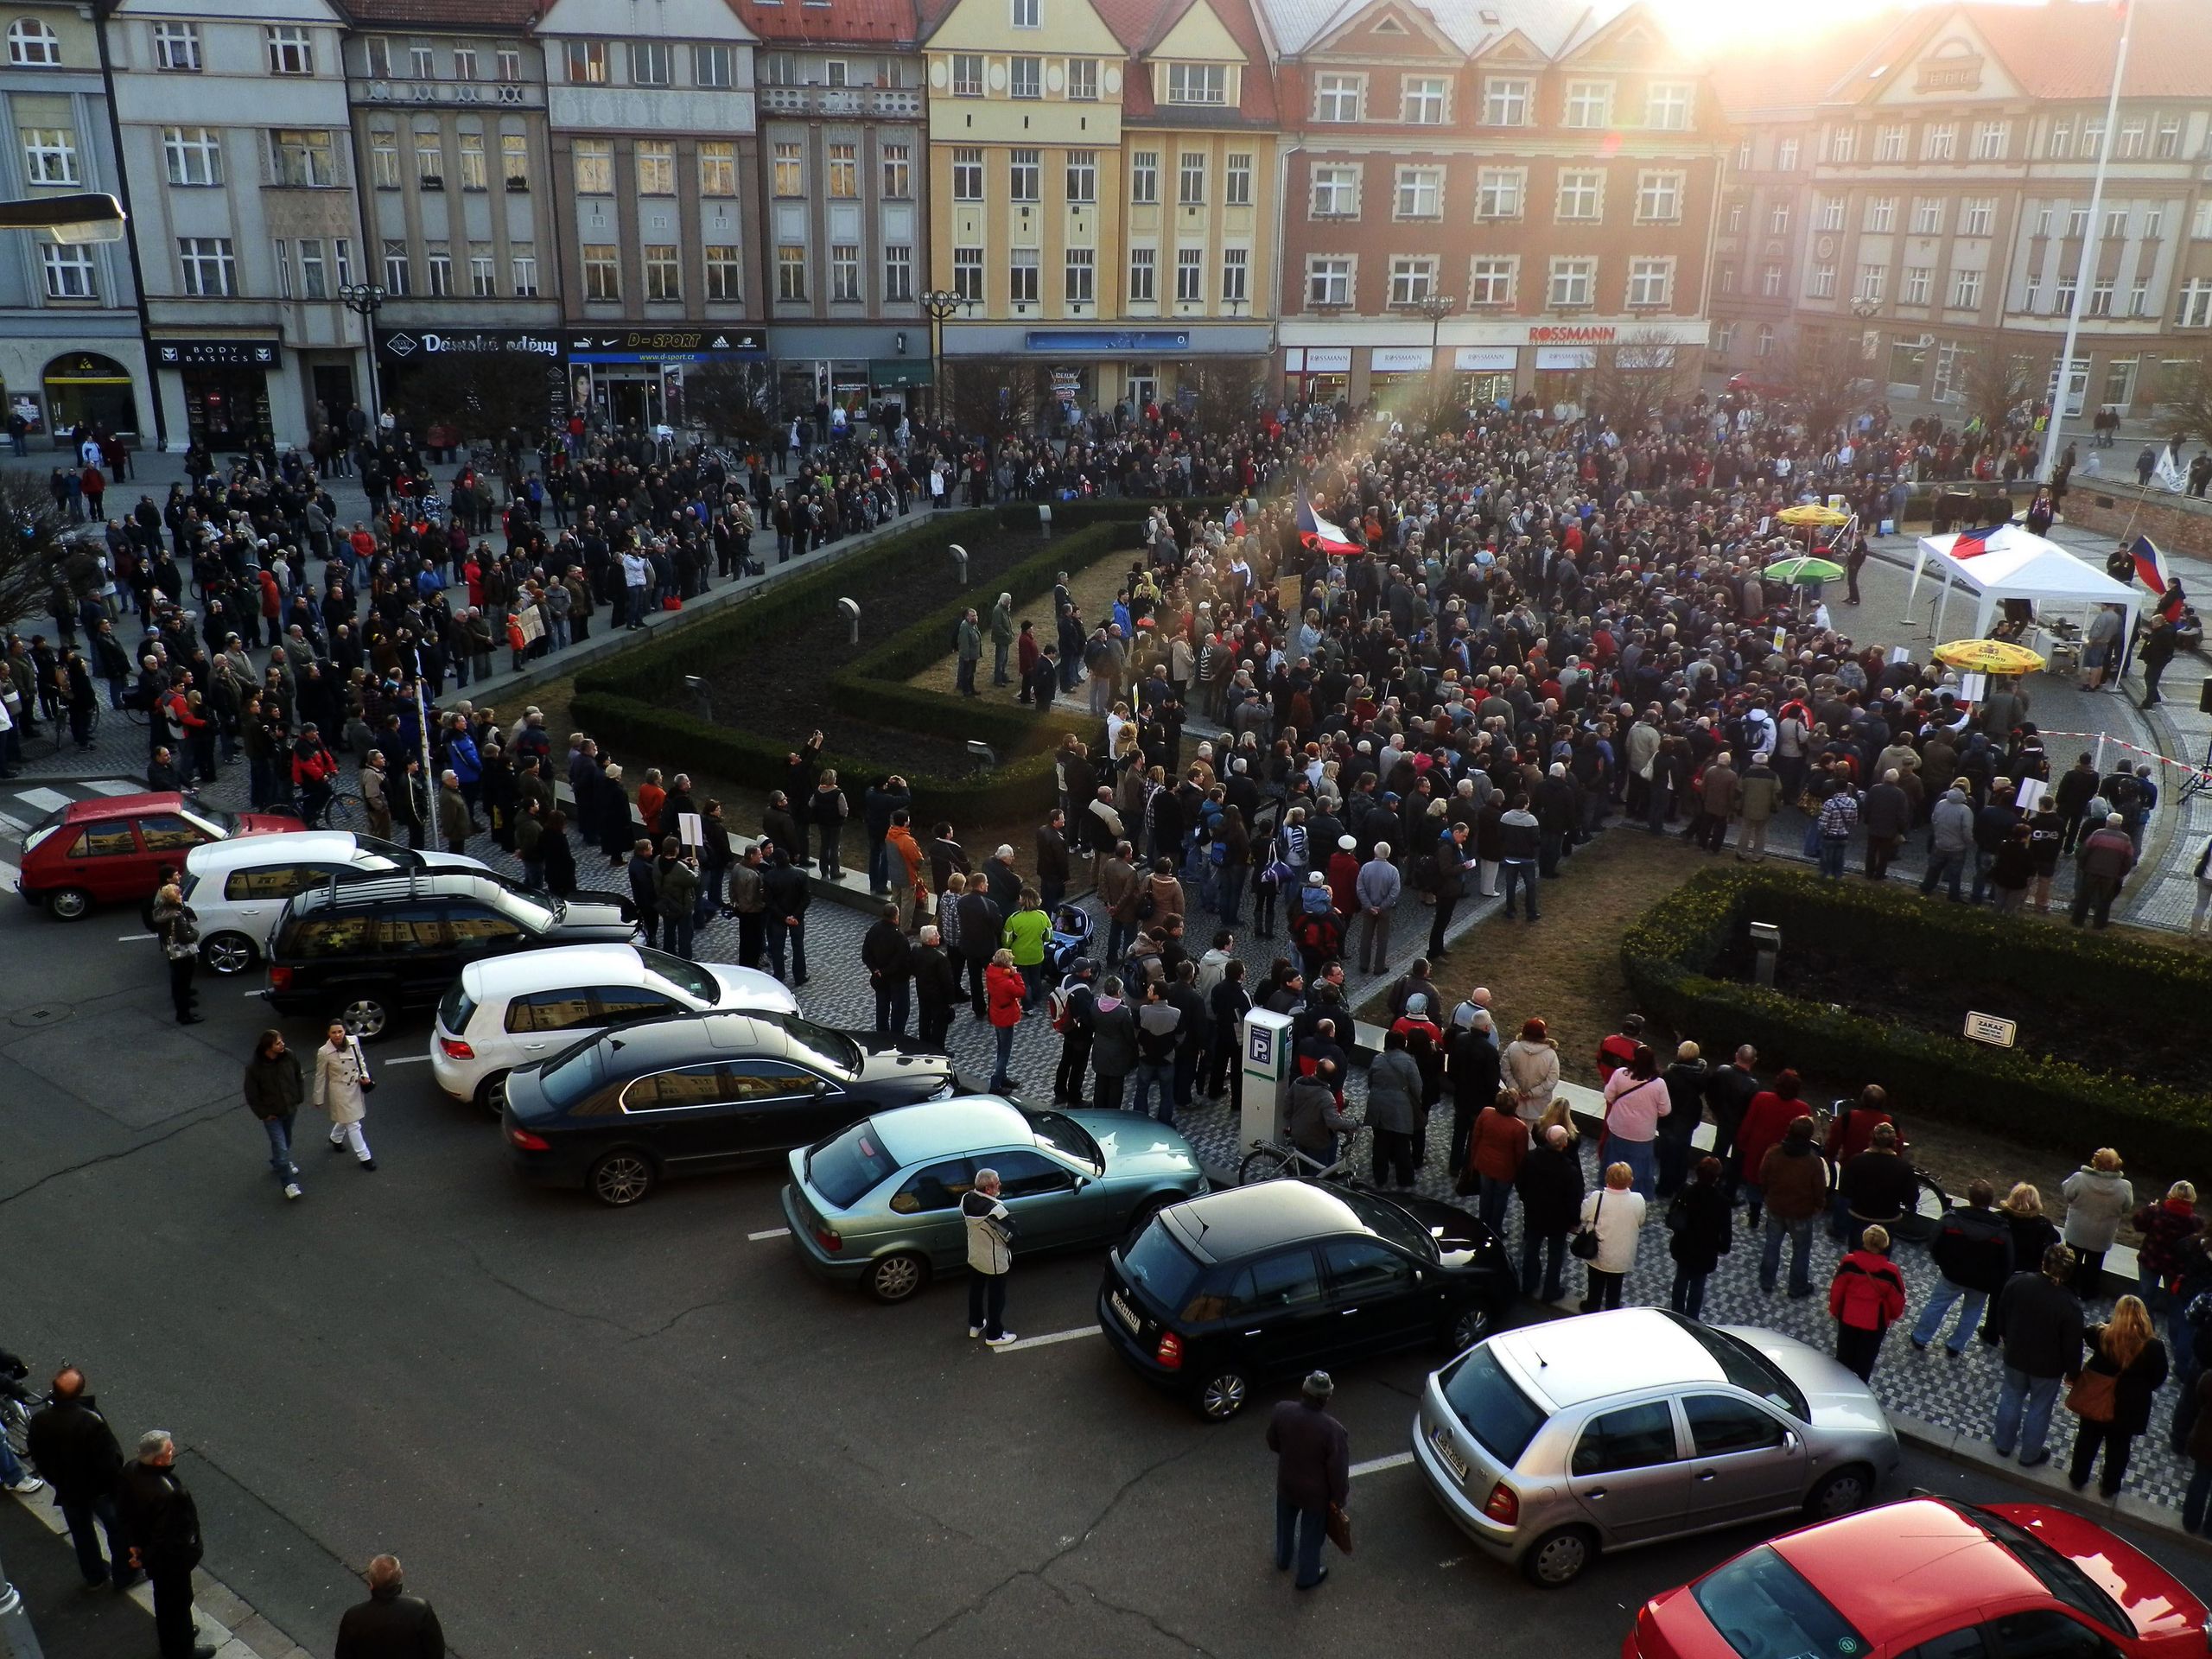 Lidé demonstrují proti vládě ČR a prezidentovi - 14 - Lidé protestují proti vládě Petra Nečase a prezidentu Klausovi (14/15)